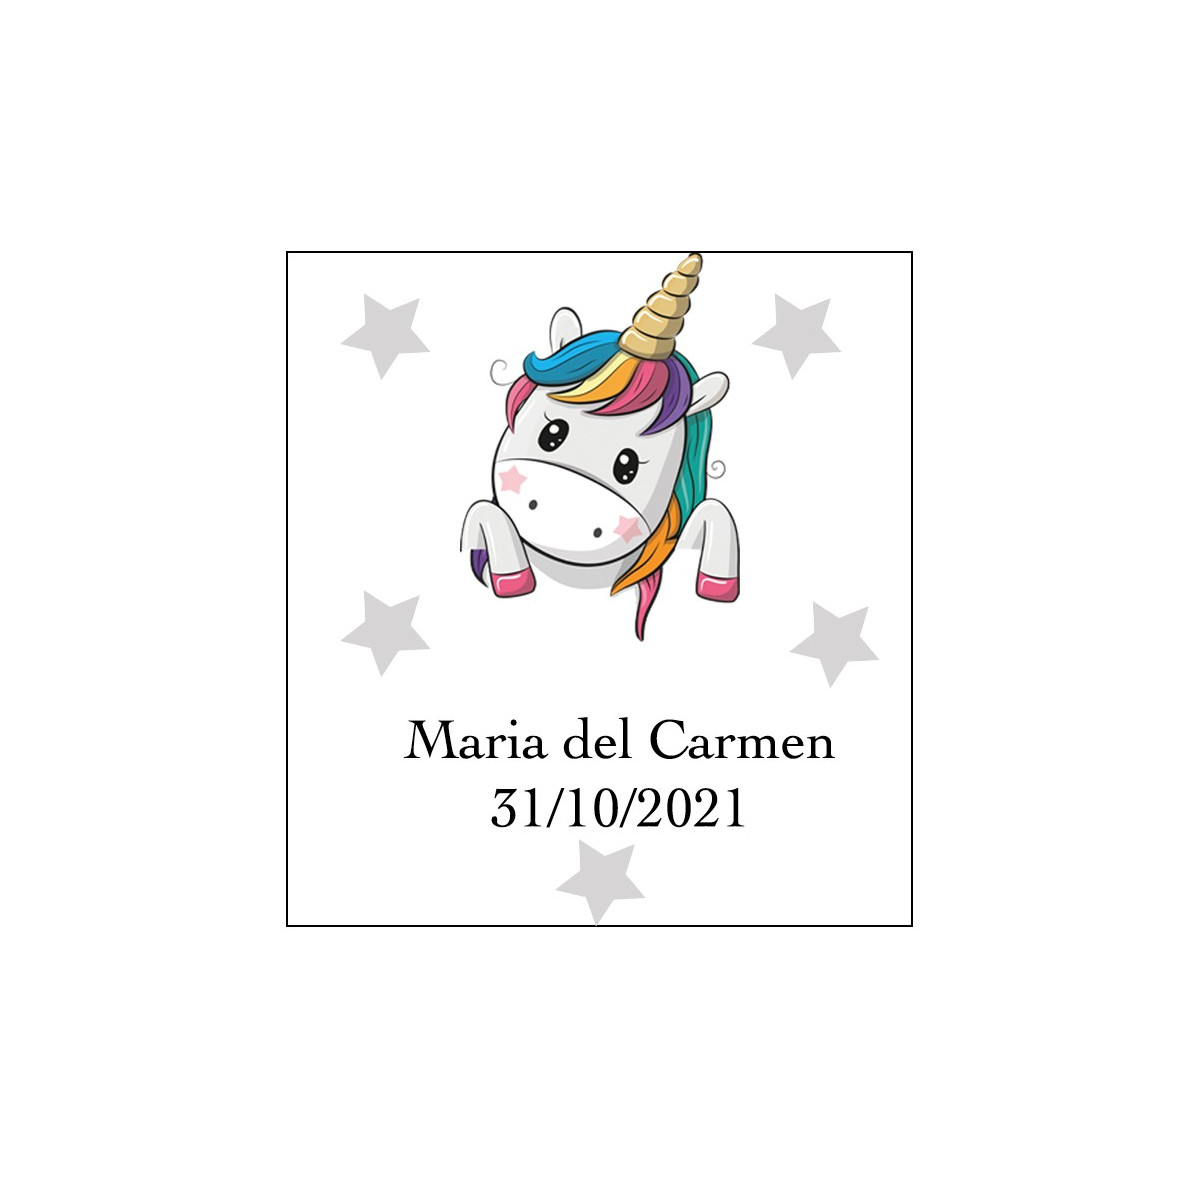 Regalo de cumpleaños para niña 5 - unicornio' Pegatina